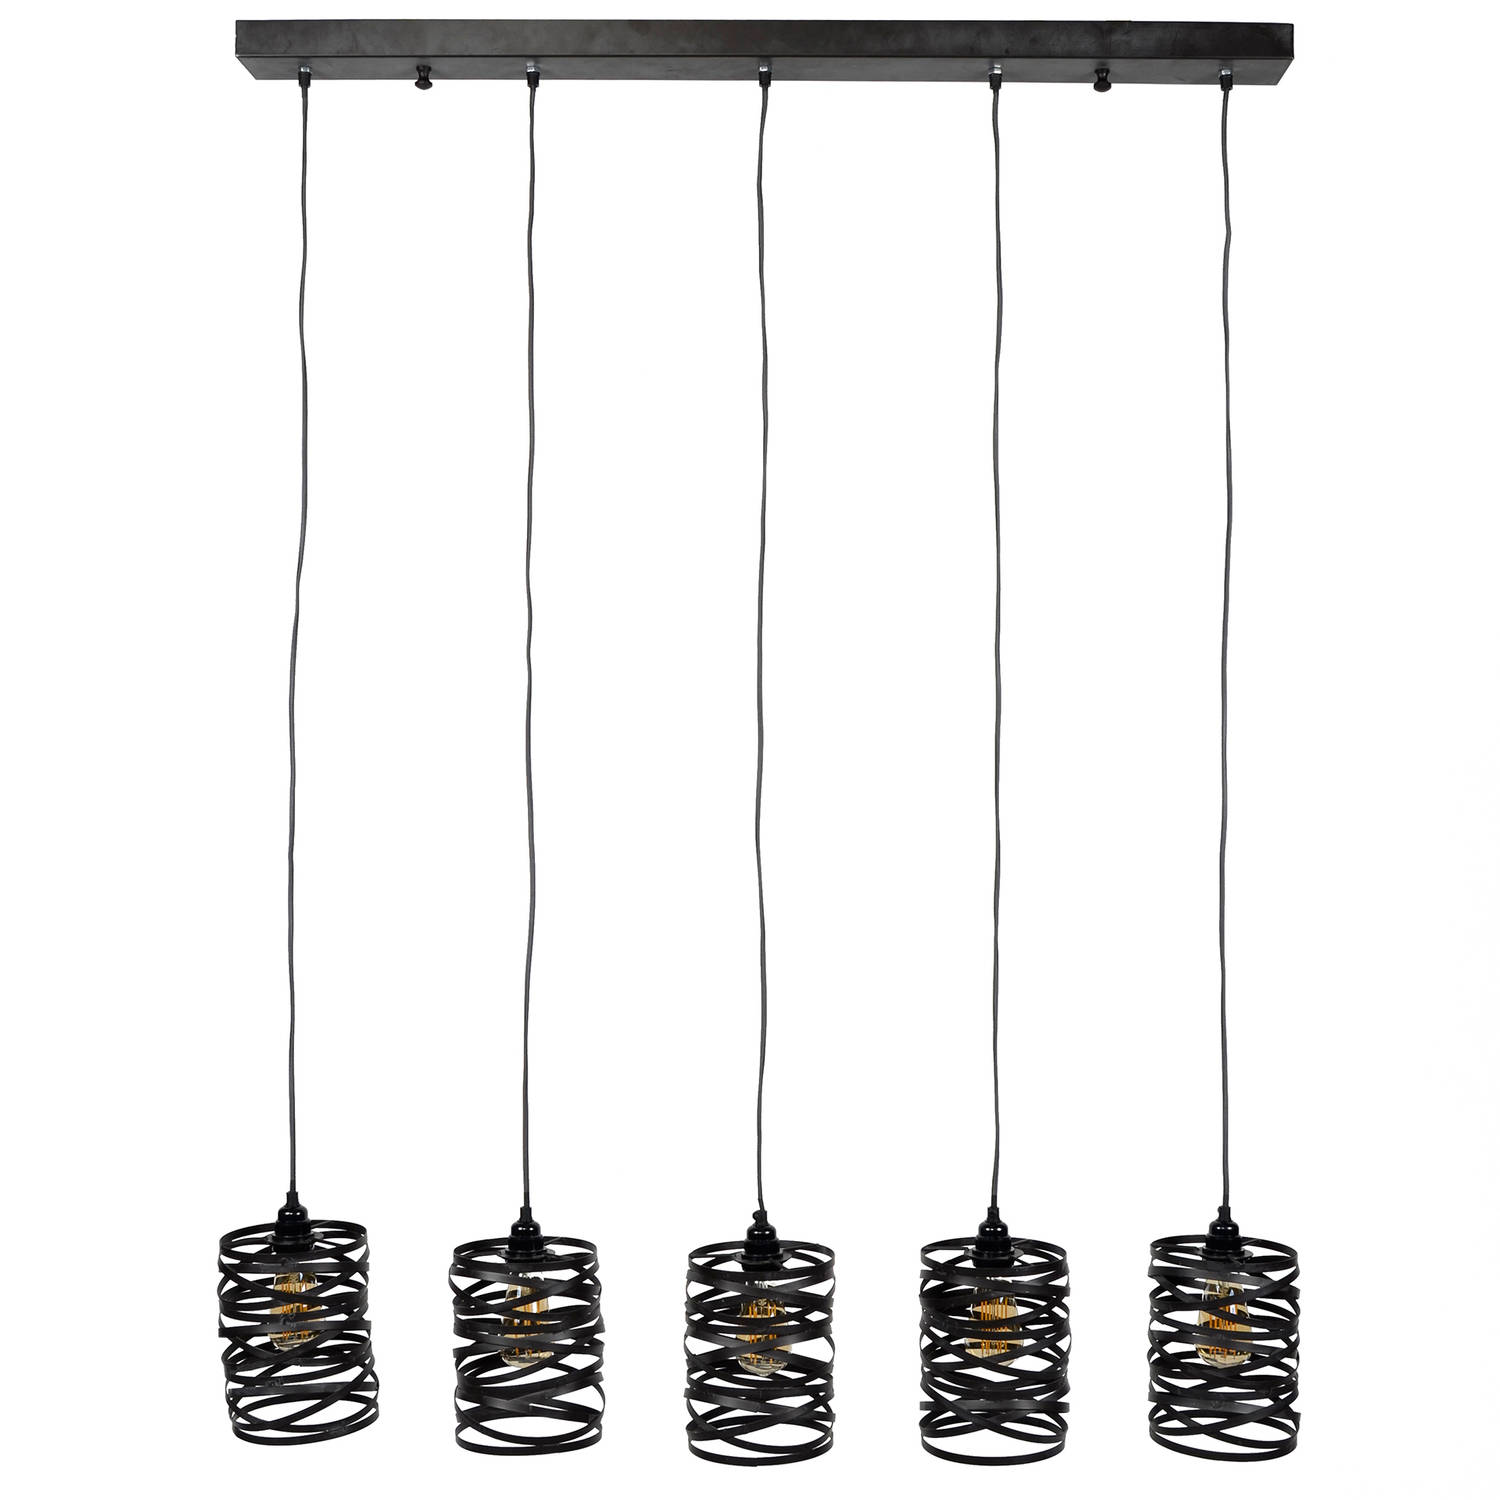 Hoyz Industriele Hanglamp 5 Lampen ø17 Spiraal